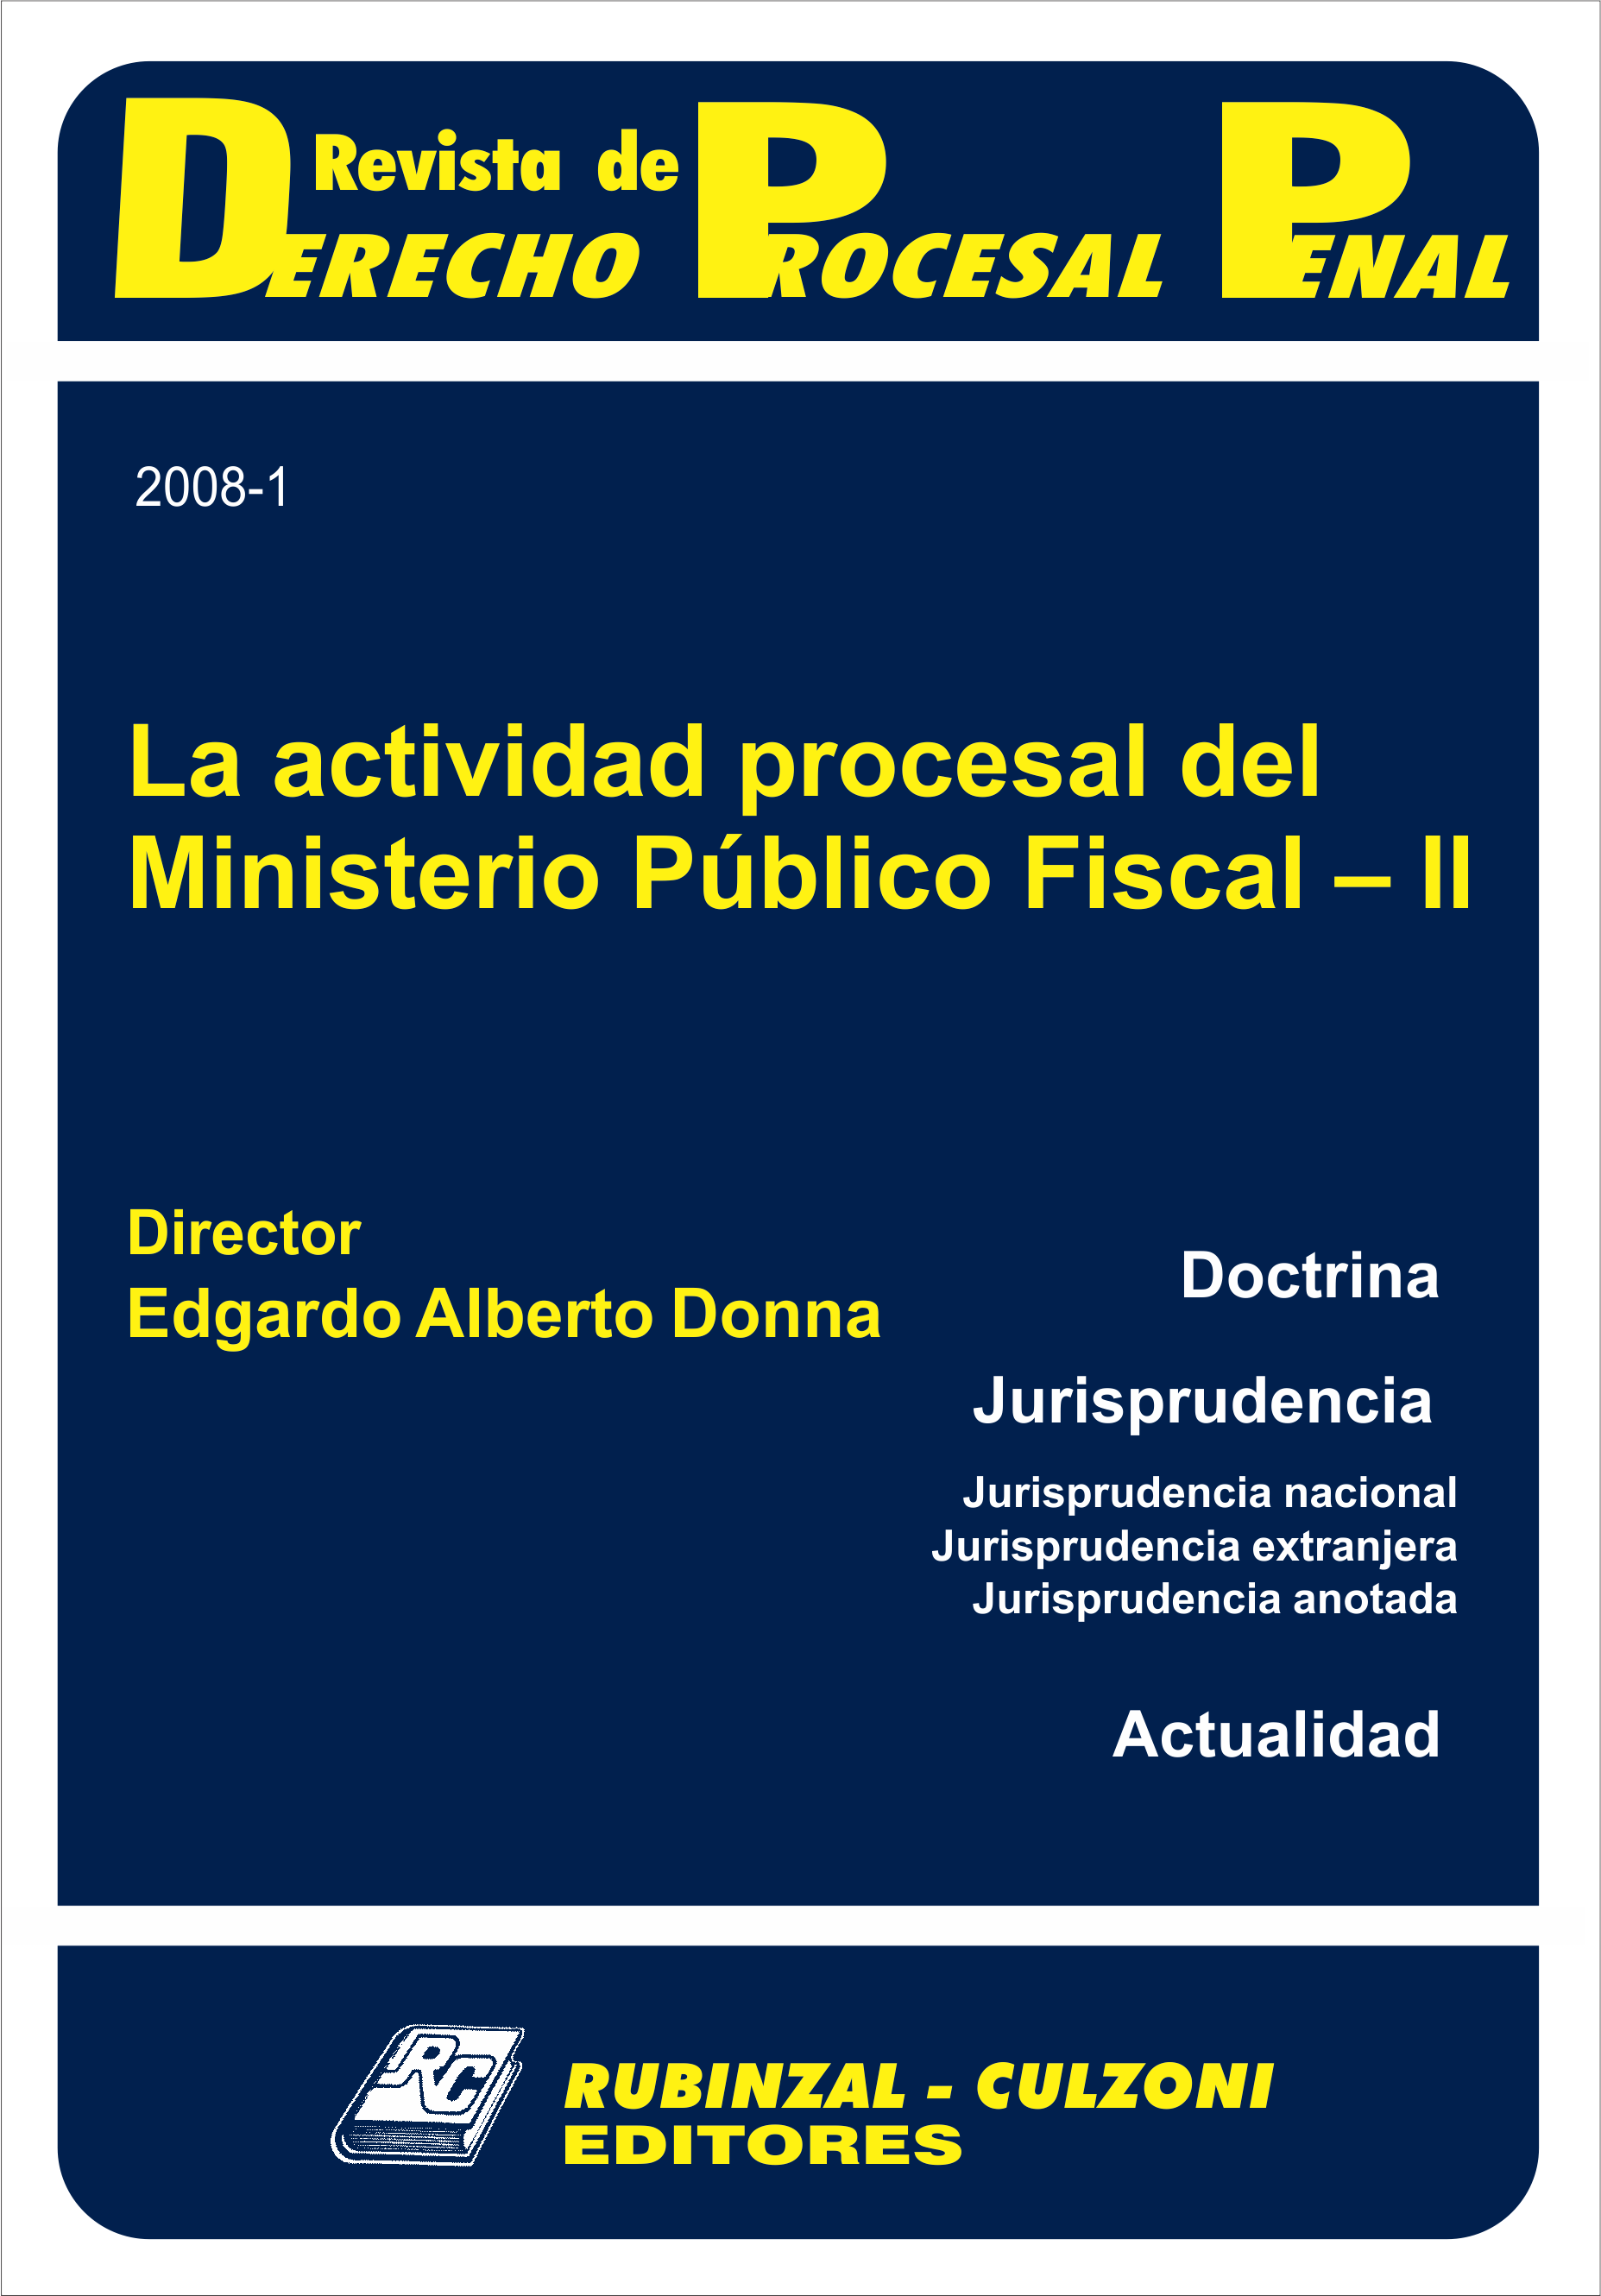 Revista de Derecho Procesal Penal - La actividad procesal del Ministerio Público Fiscal - II